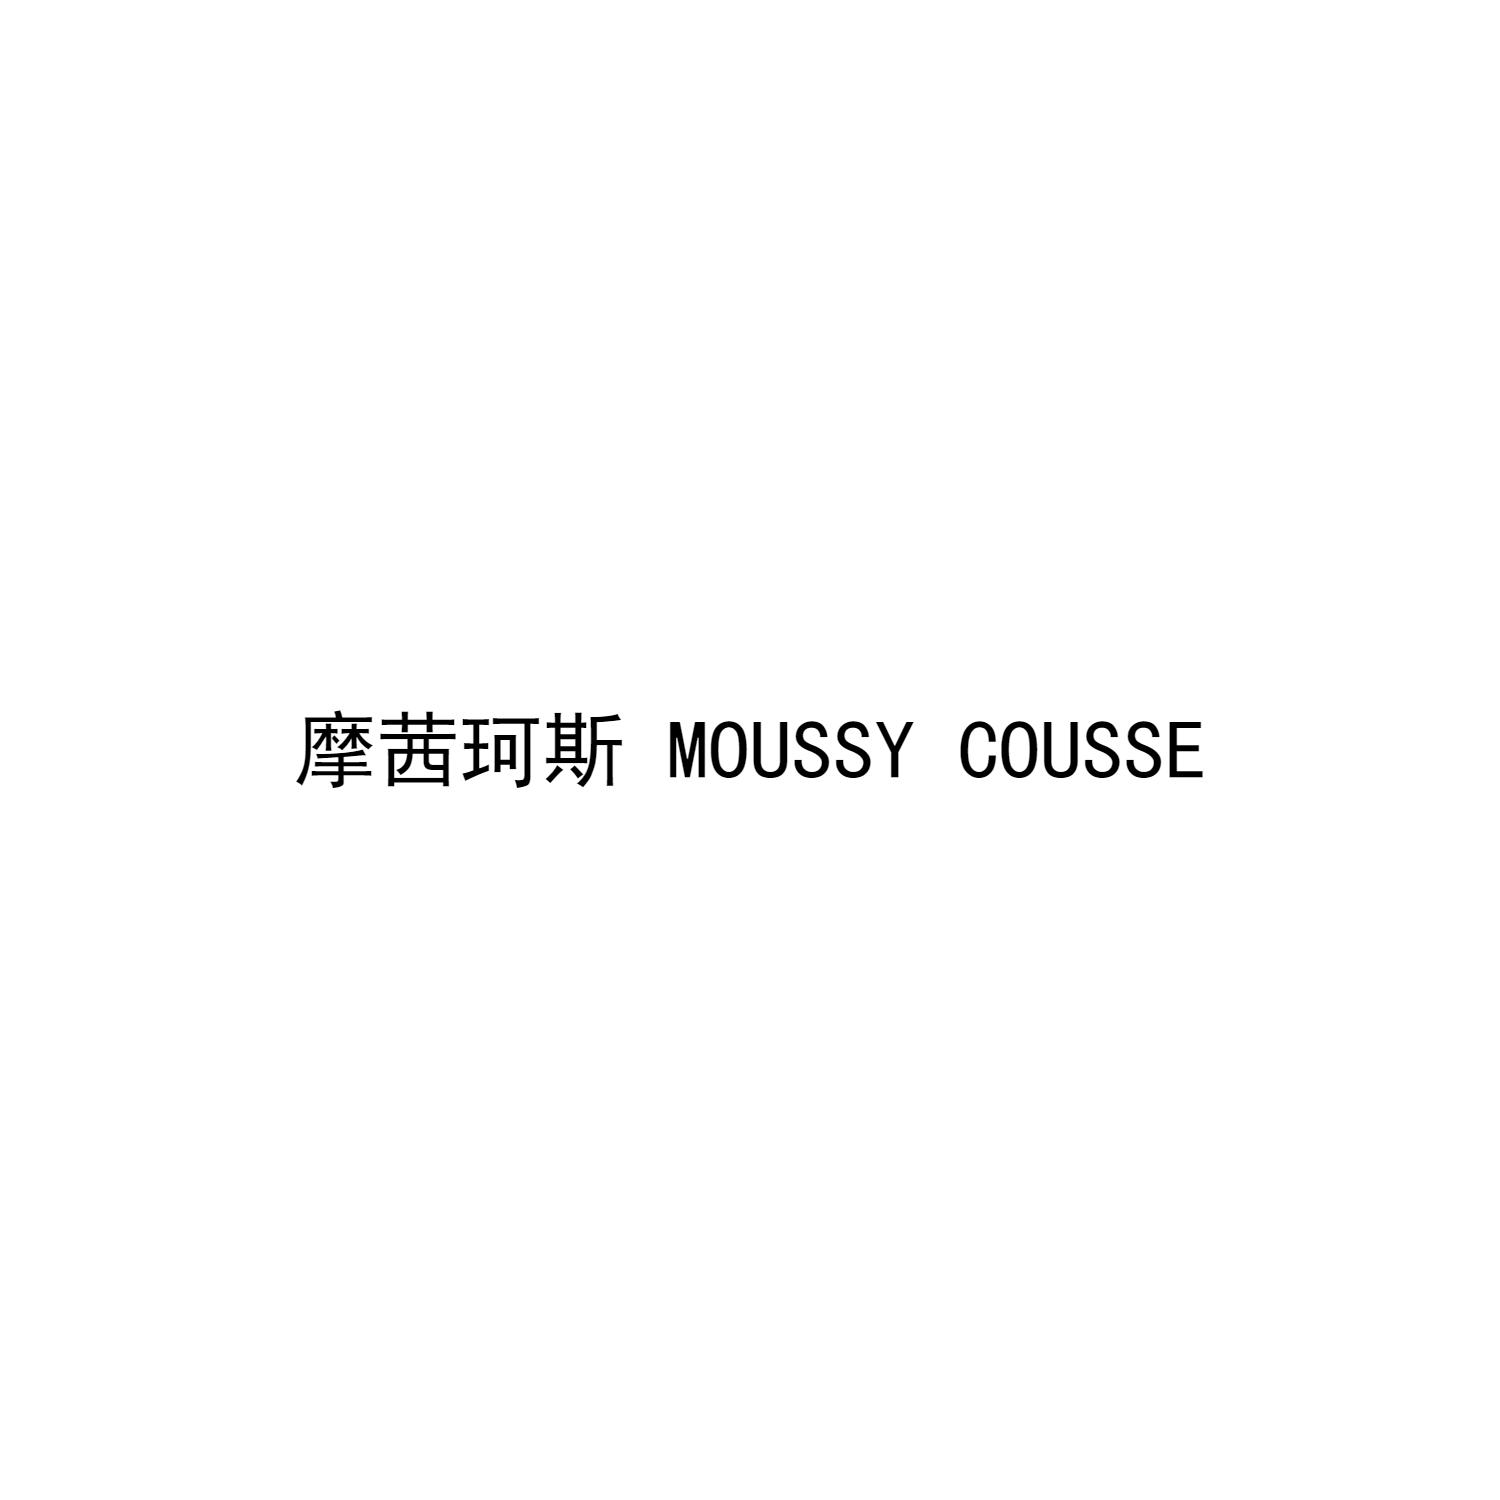 25类-服装鞋帽摩茜珂斯 MOUSSY COUSSE商标转让